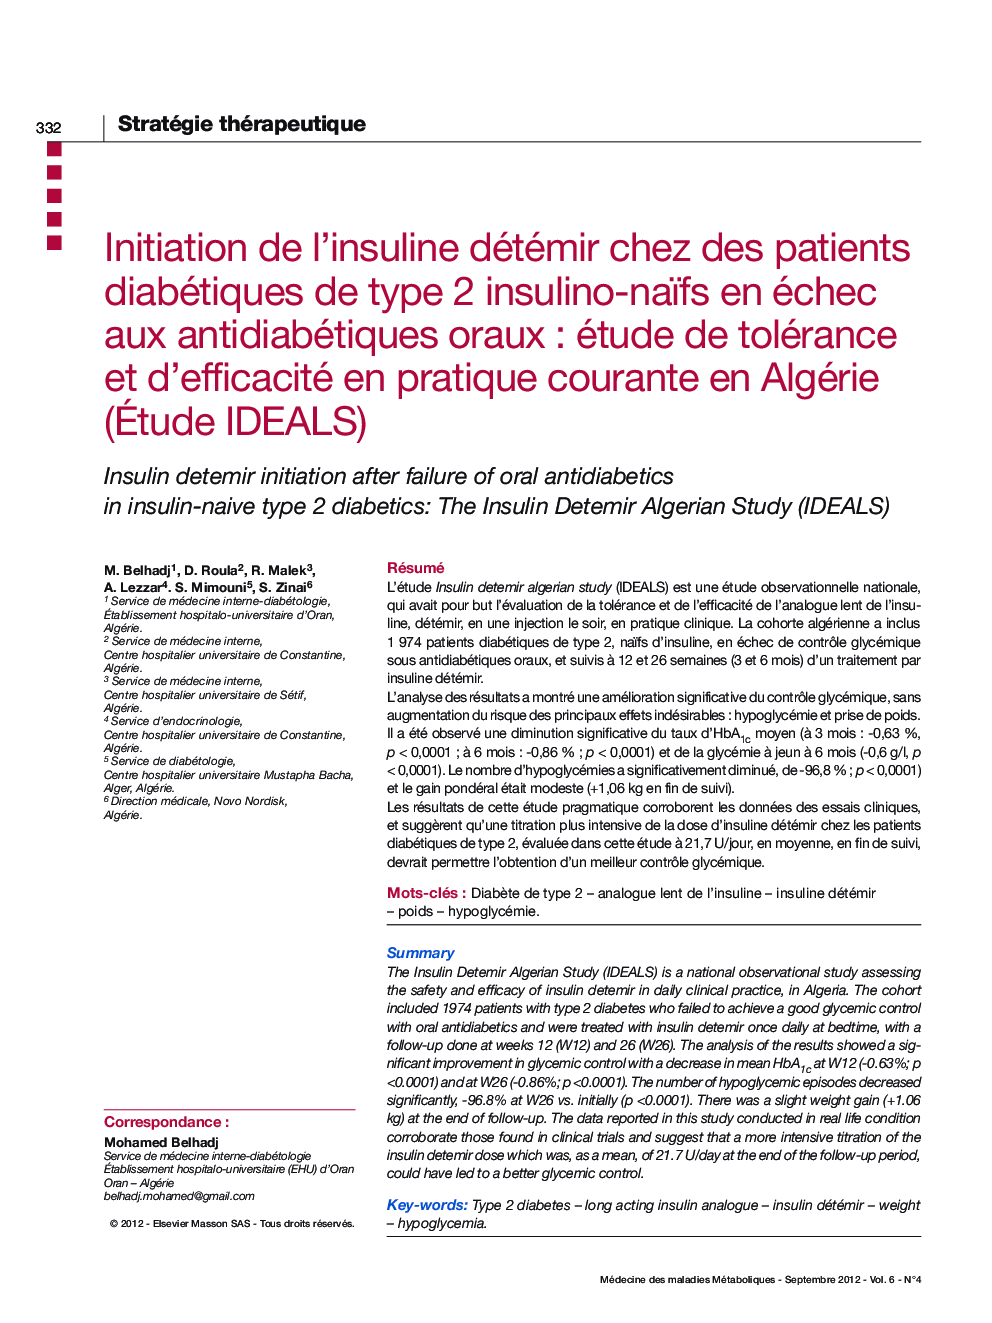 Initiation de l'insuline détémir chez des patients diabétiques de type 2 insulino-naïfs en échec aux antidiabétiques oraux : étude de tolérance et d'efficacité en pratique courante en Algérie (Ãtude IDEALS)